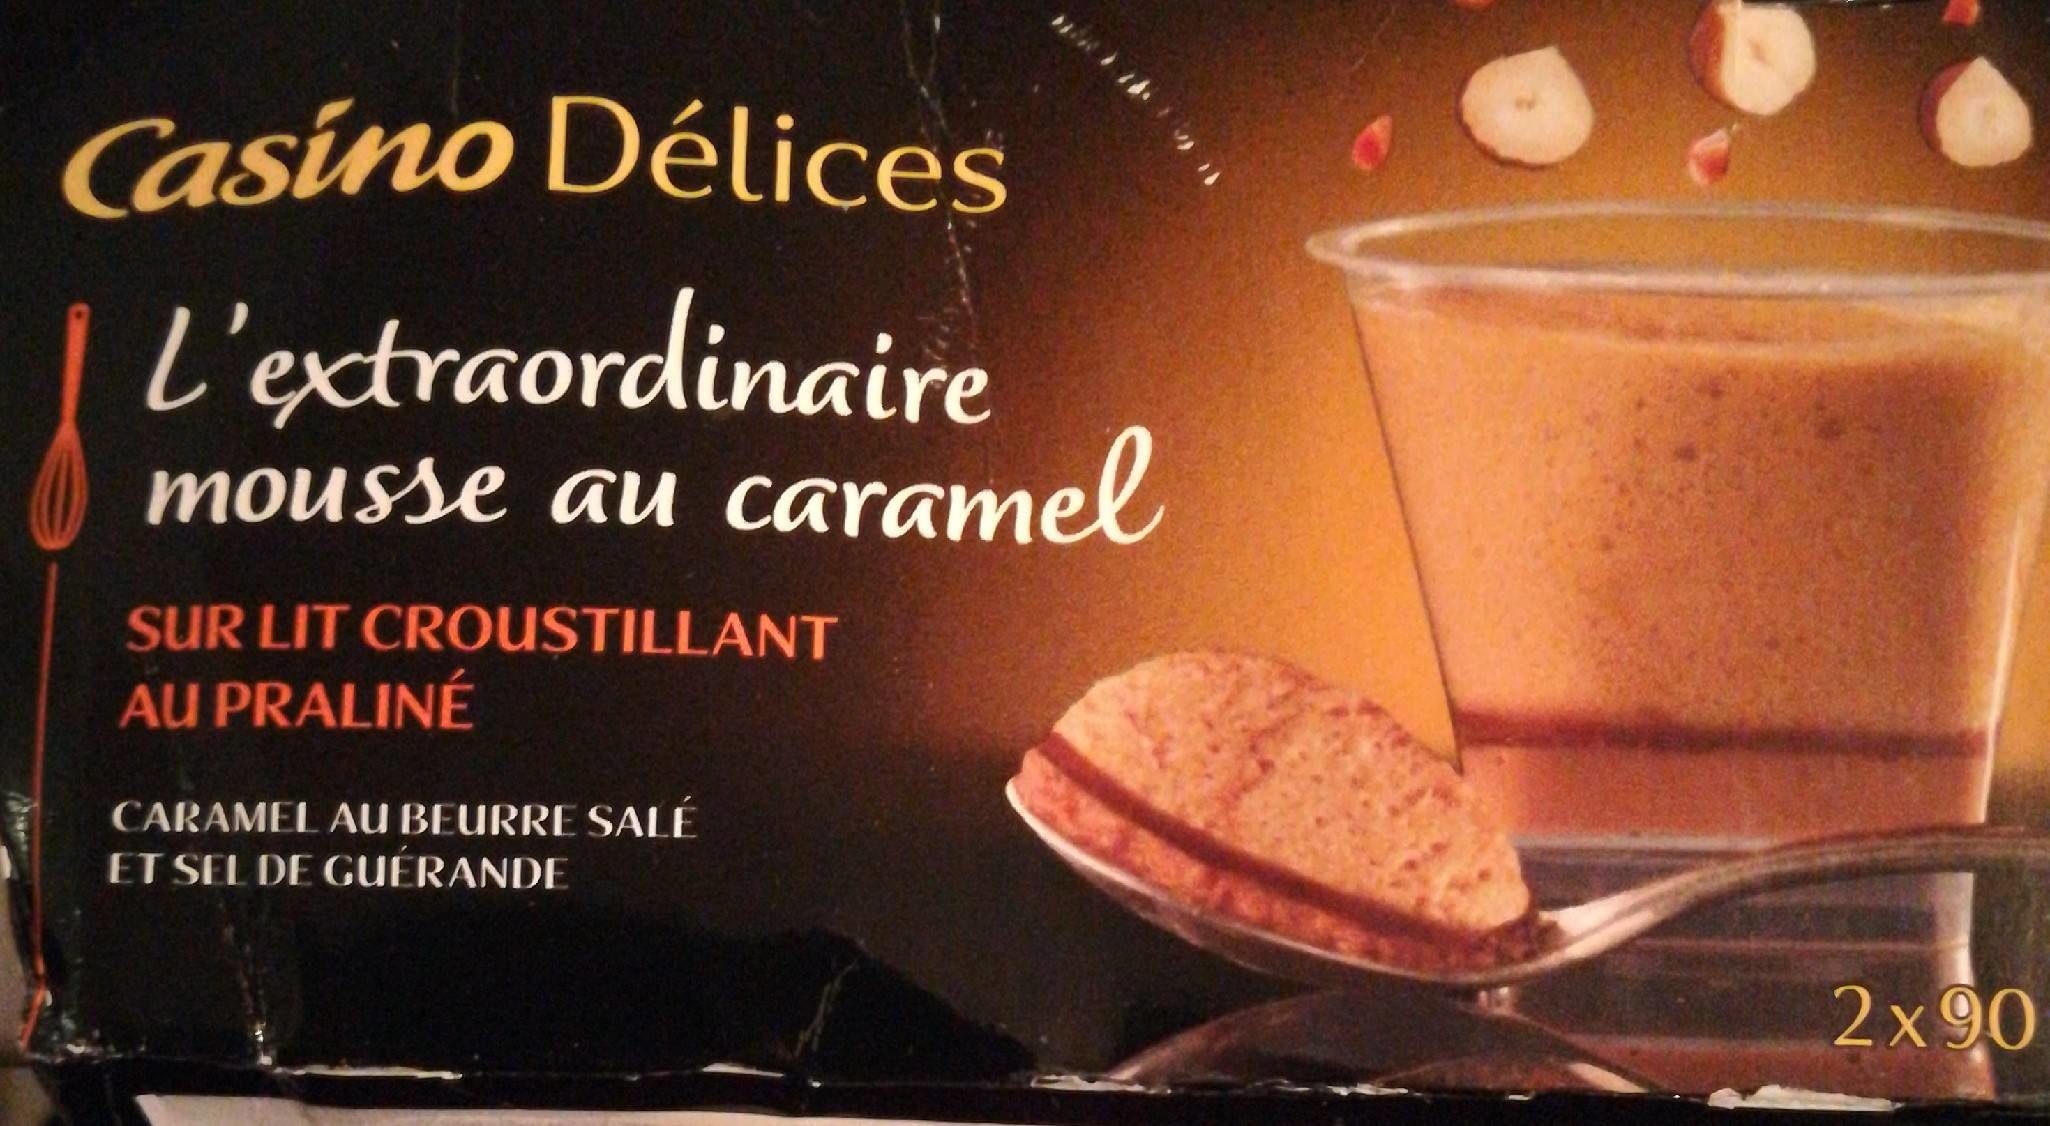 L'extraordinaire mousse au caramel sur lit croustillant au praliné - Produkt - fr